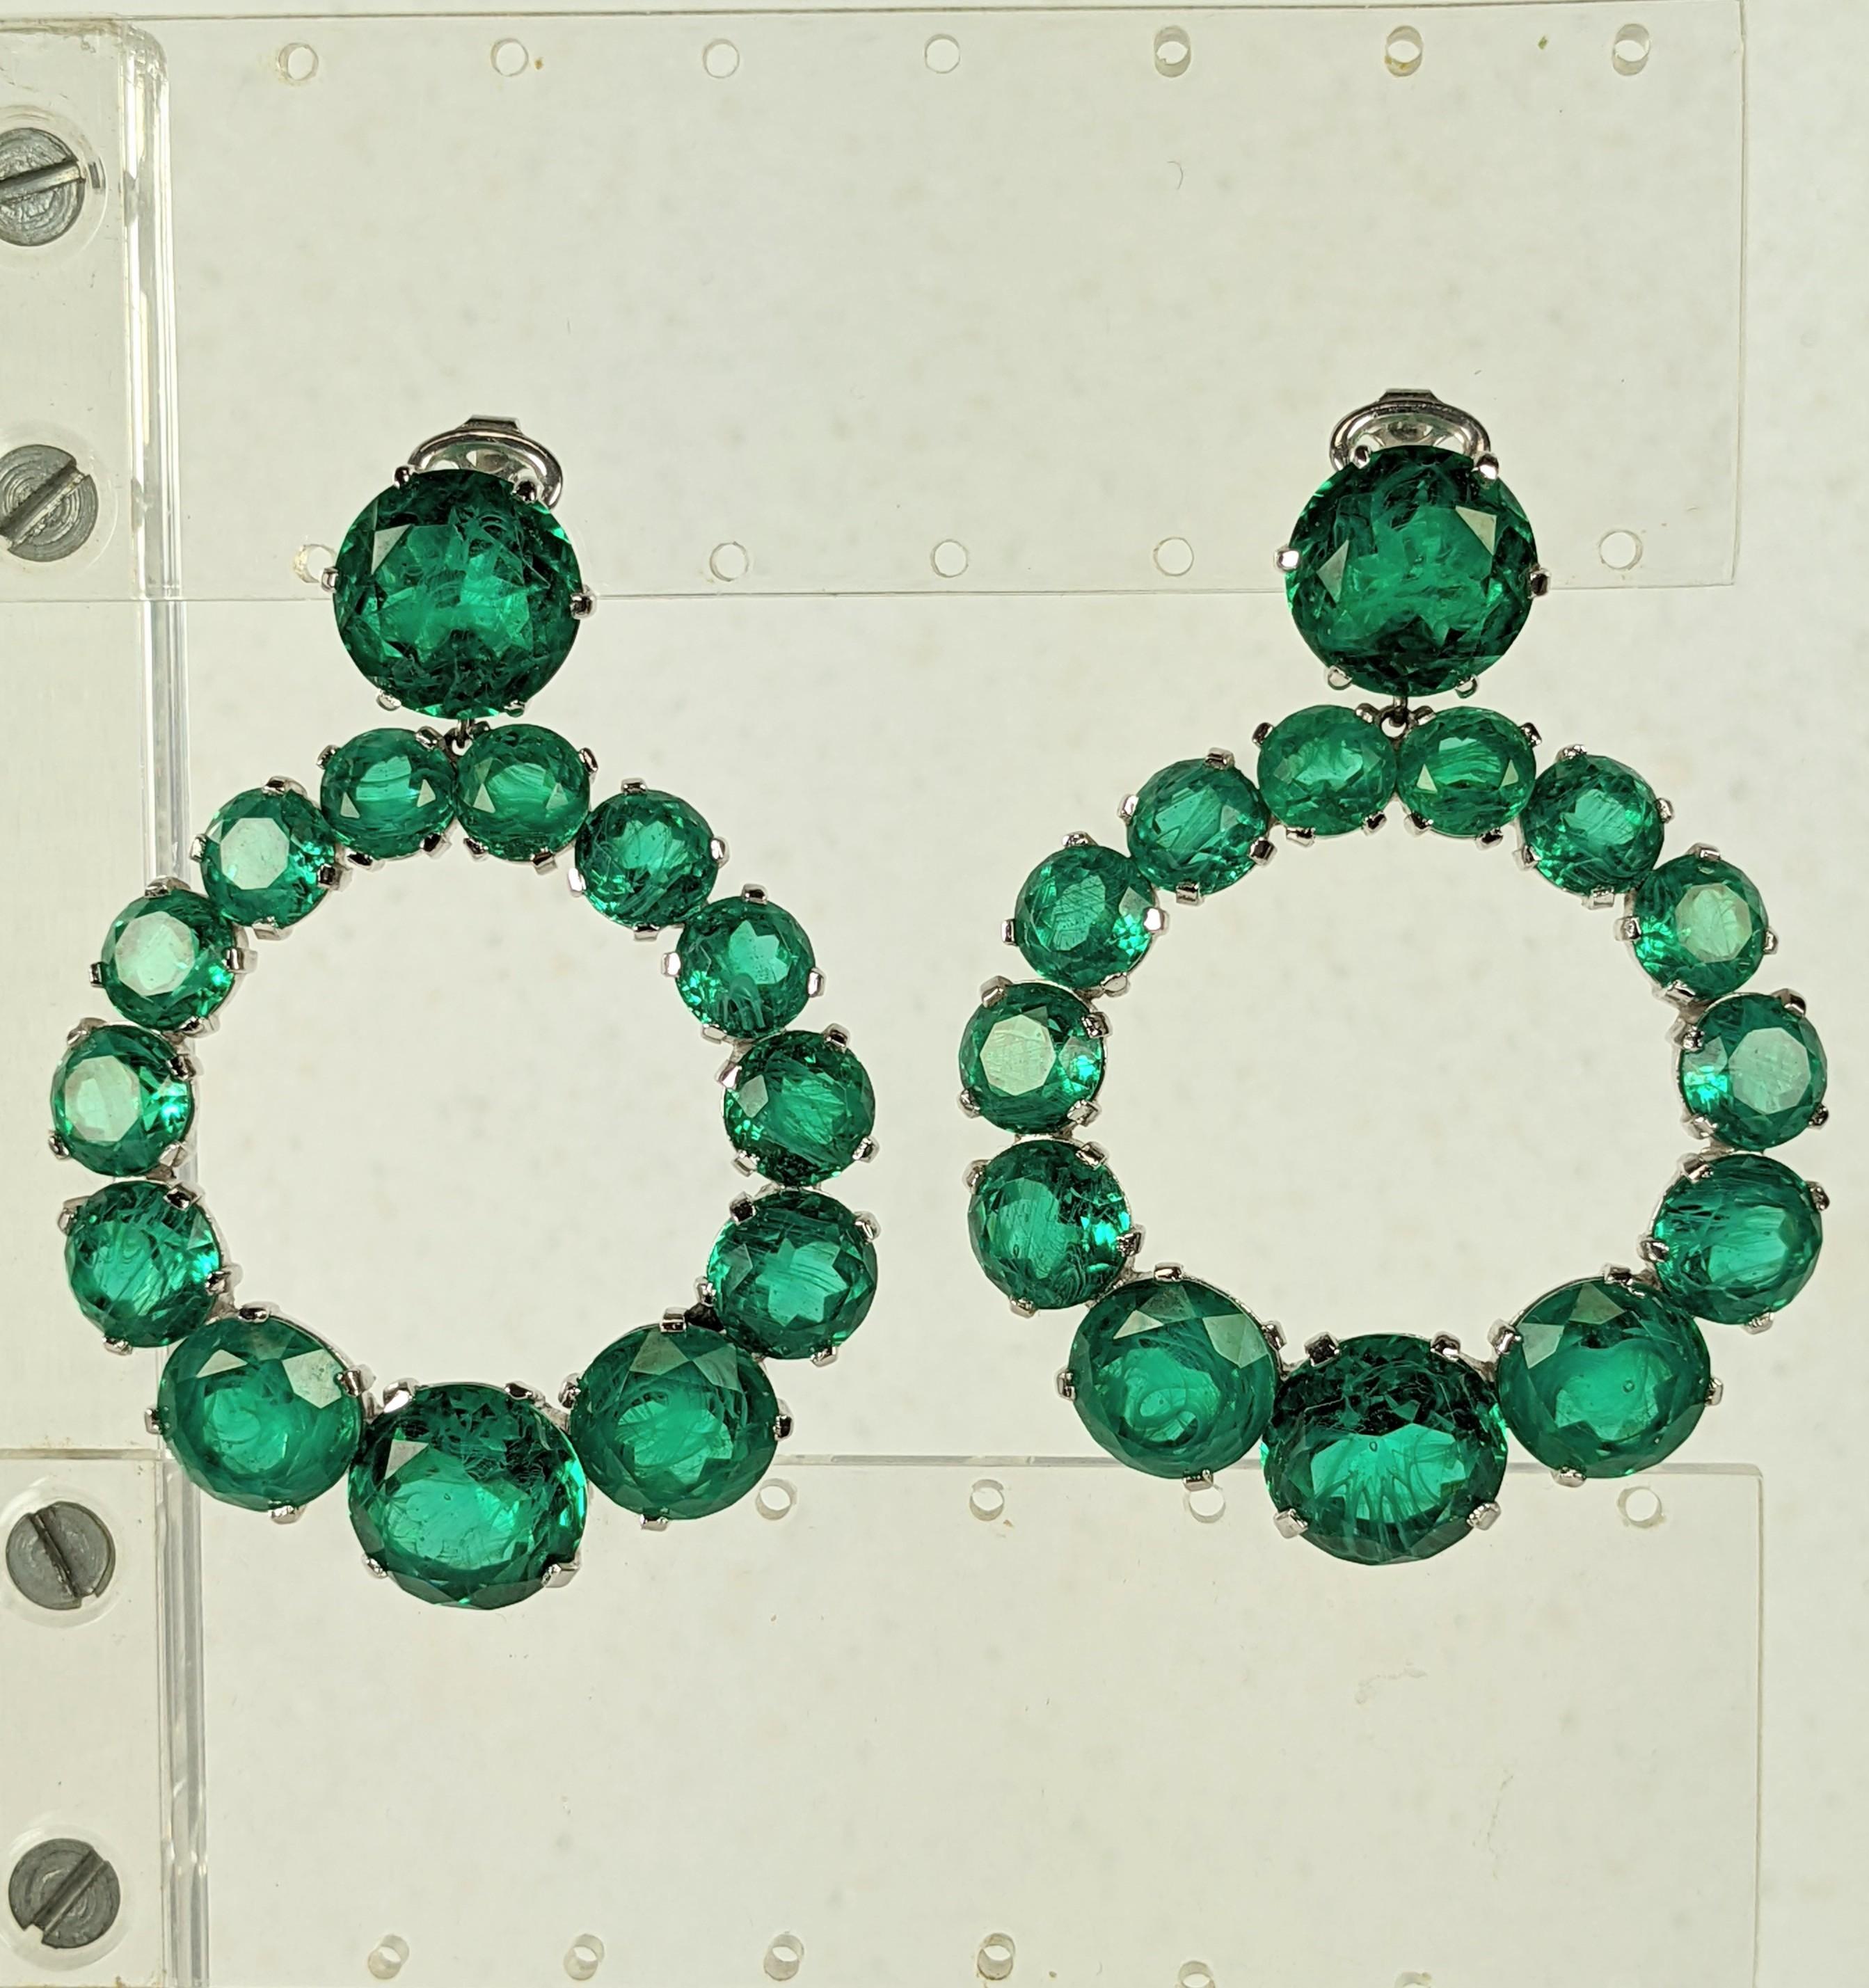 Außergewöhnliche Trifari Faux Emerald Hoop Earrings aus den 1960er Jahren. Kunstschmuck in feinster Qualität vom besten Hersteller der Zeit mit Glassteinen, die fehlerhafte Smaragde in abgestuften Größen simulieren.
Clip-Back-Armaturen, super